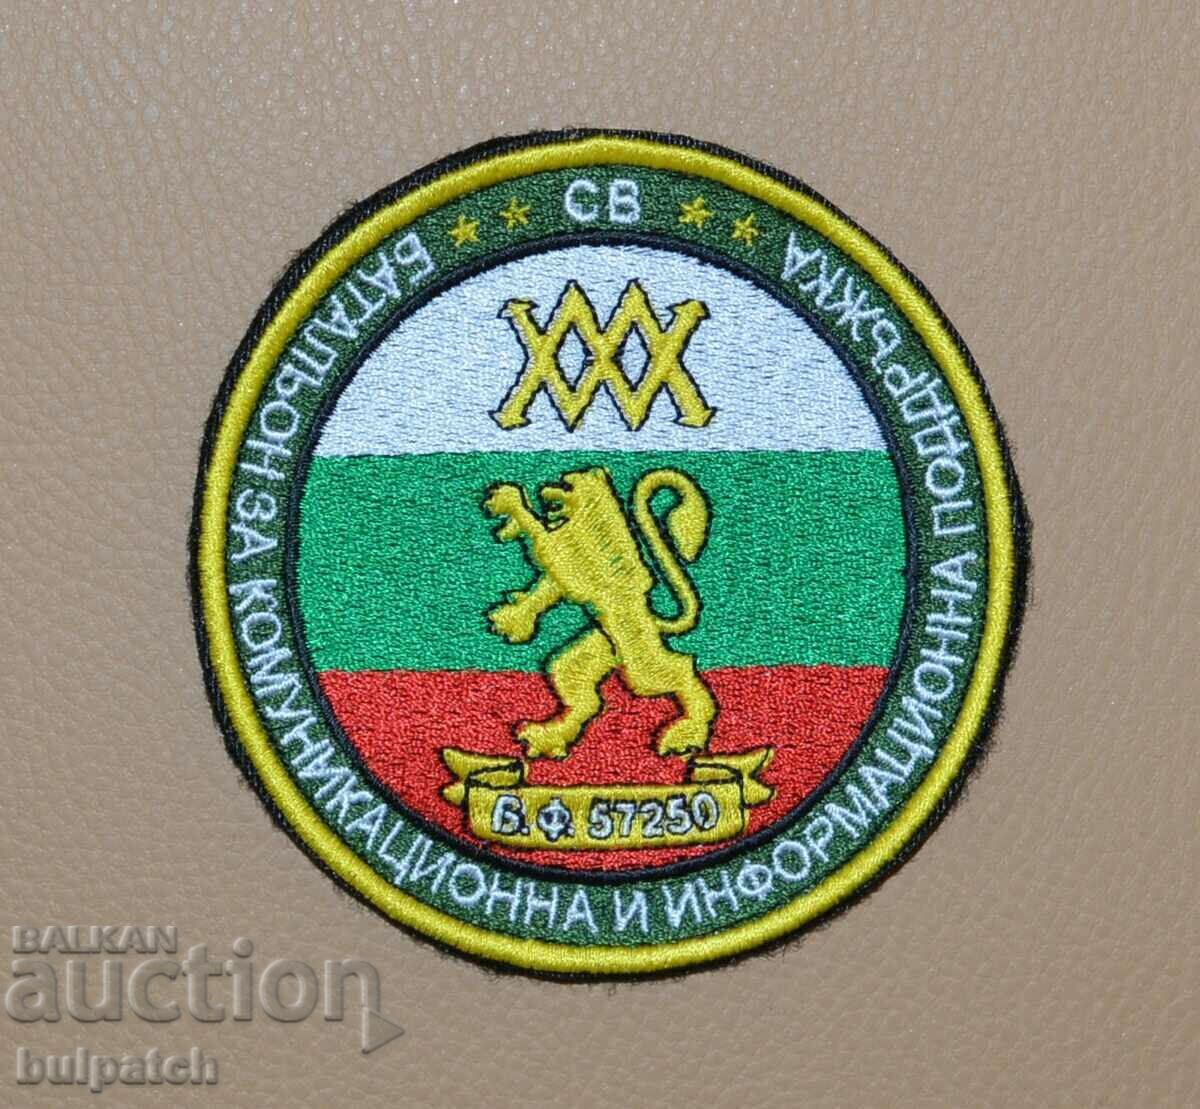 batalion de legătură emblemă v.f. 57250